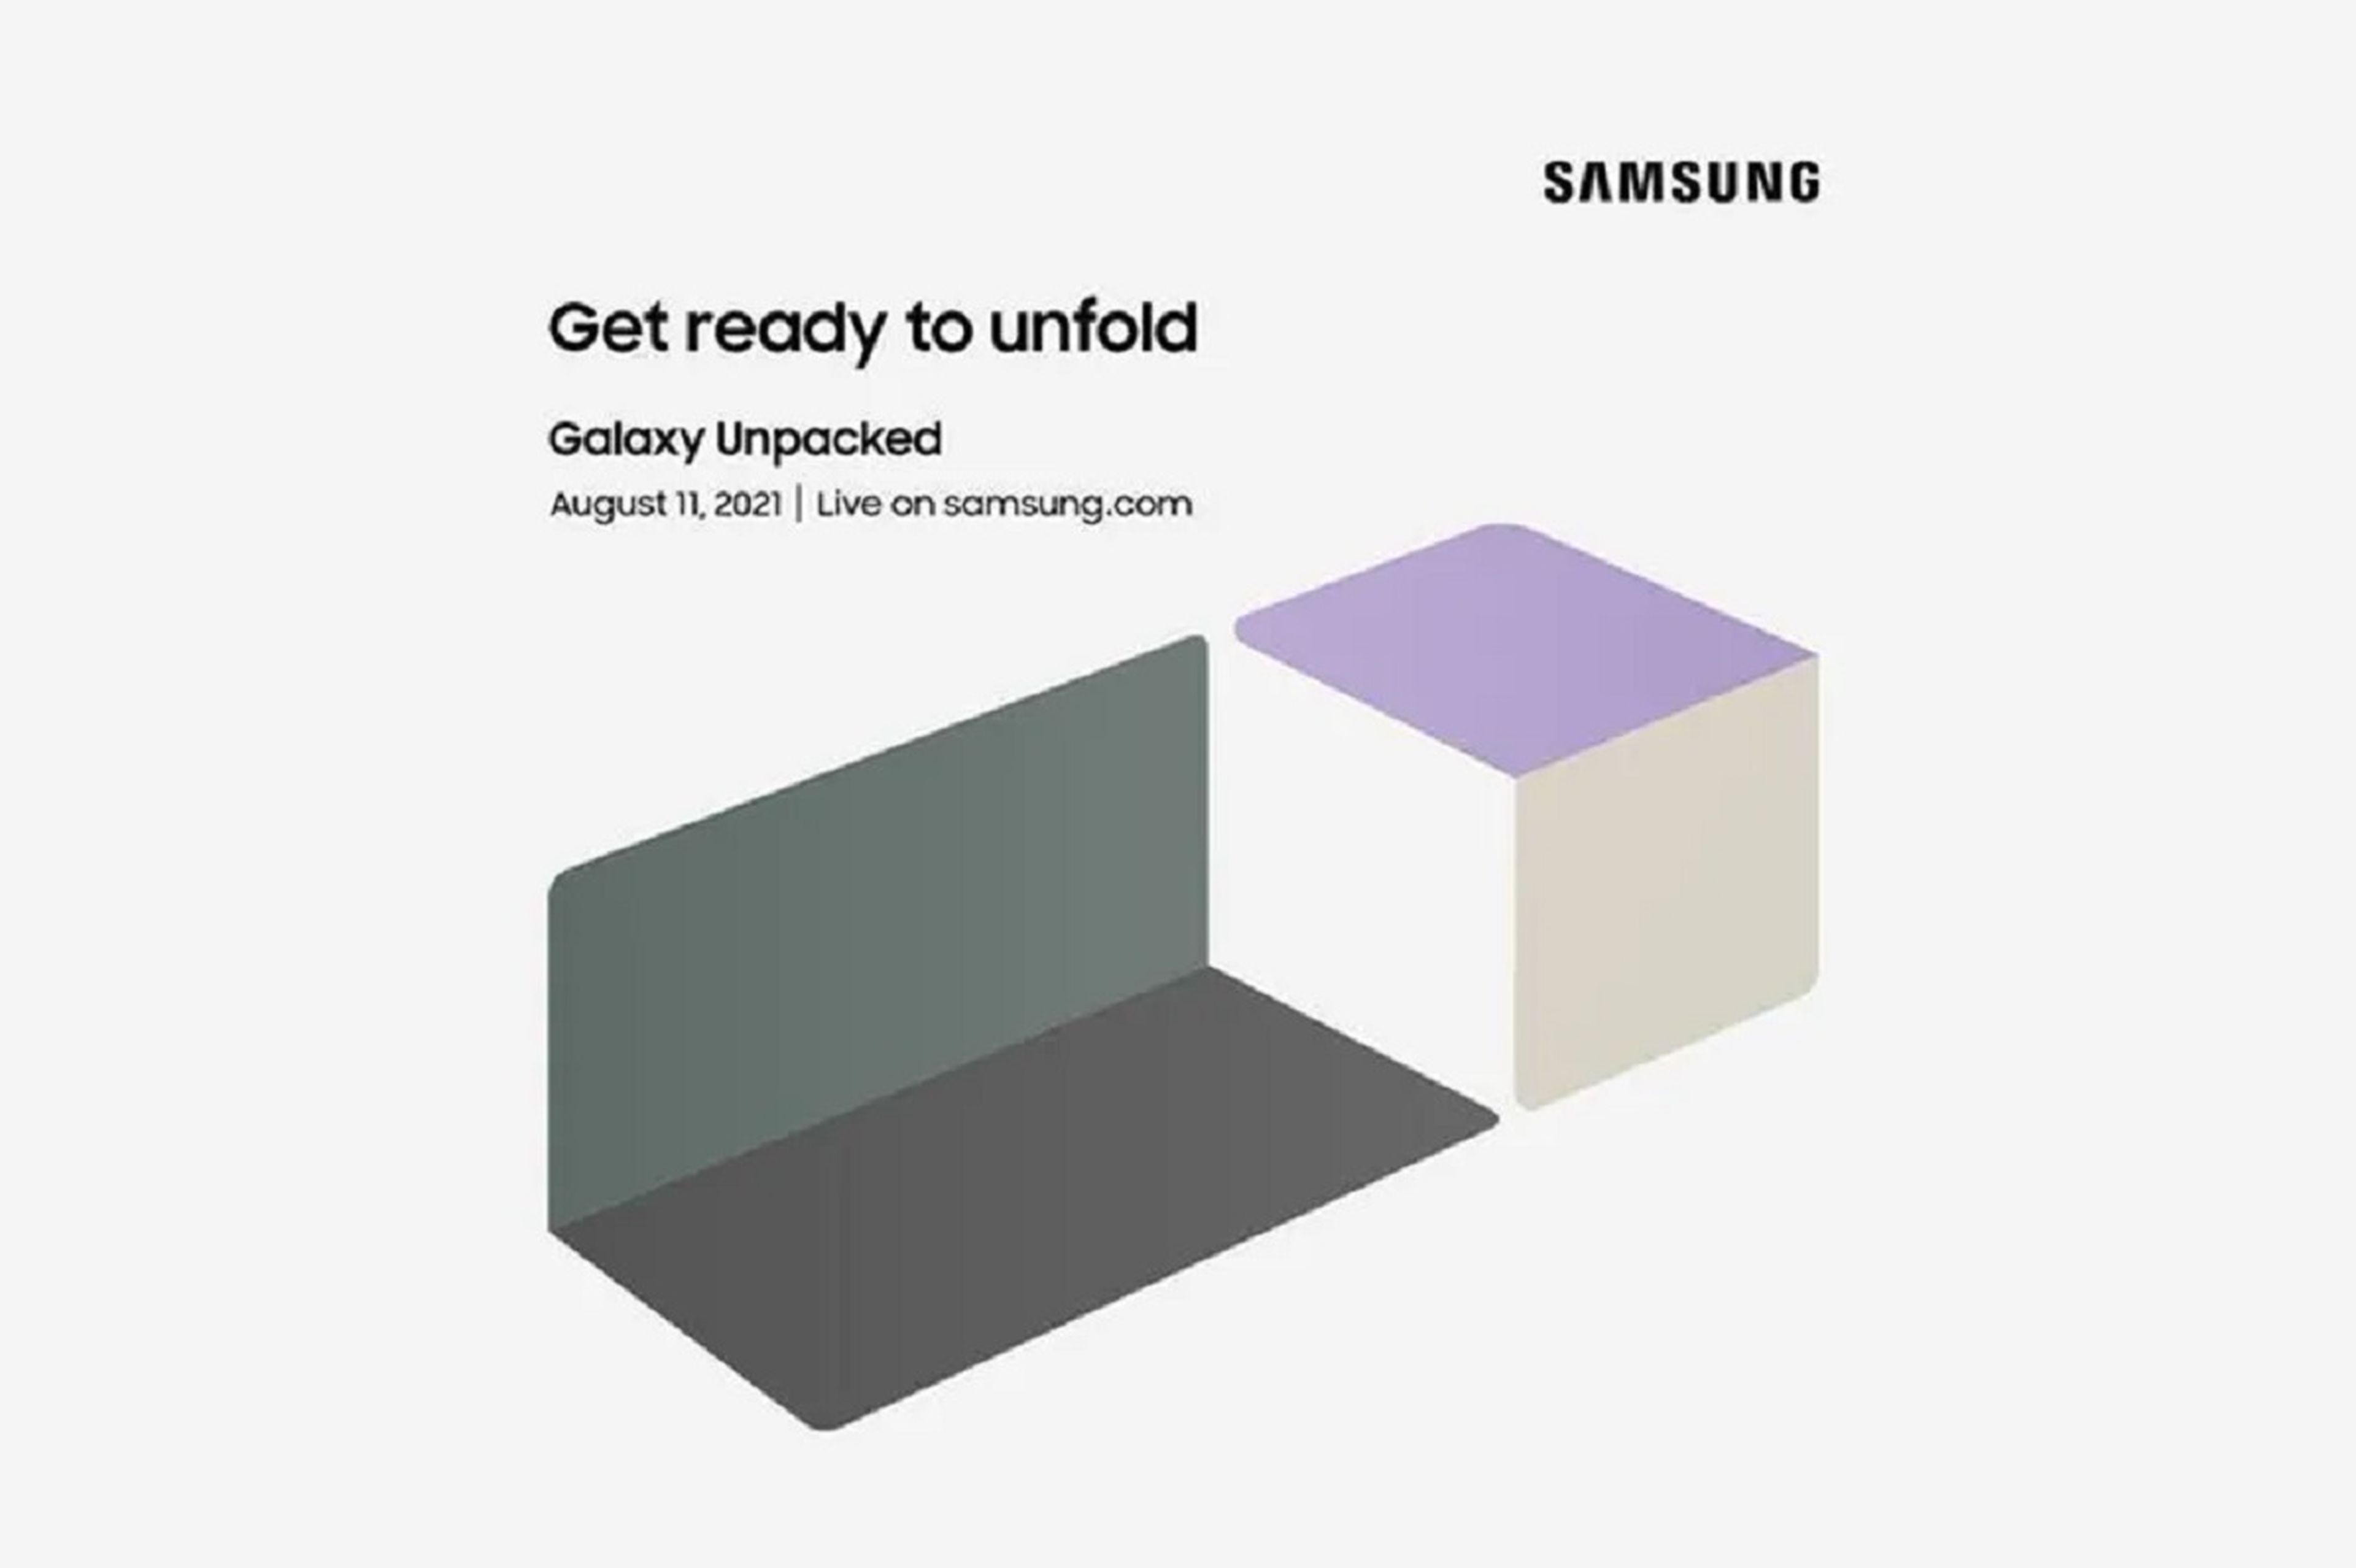 Samsung Unpacked